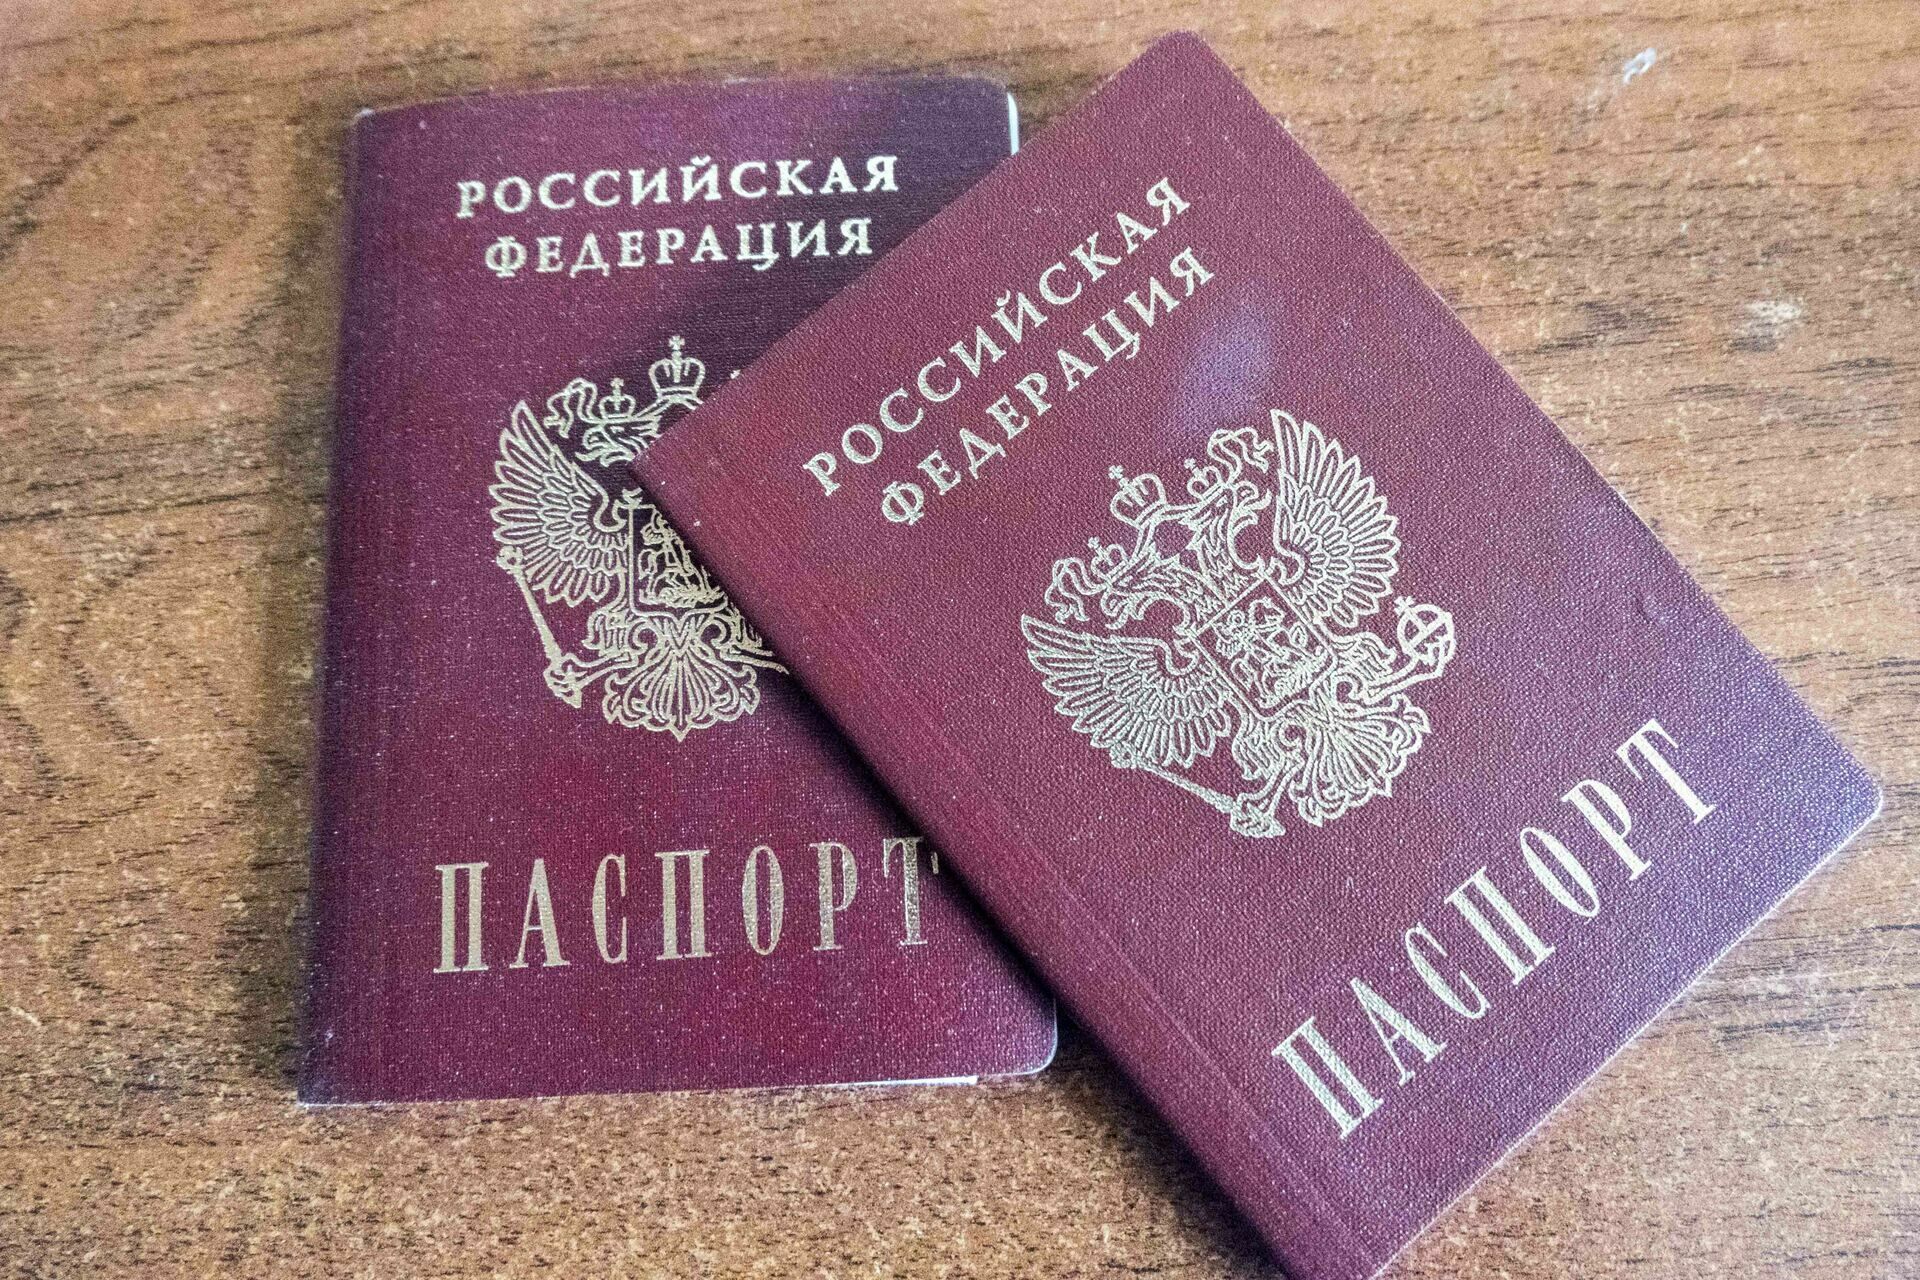 Срок действия паспортов и водительских прав в России решили продлить до конца года